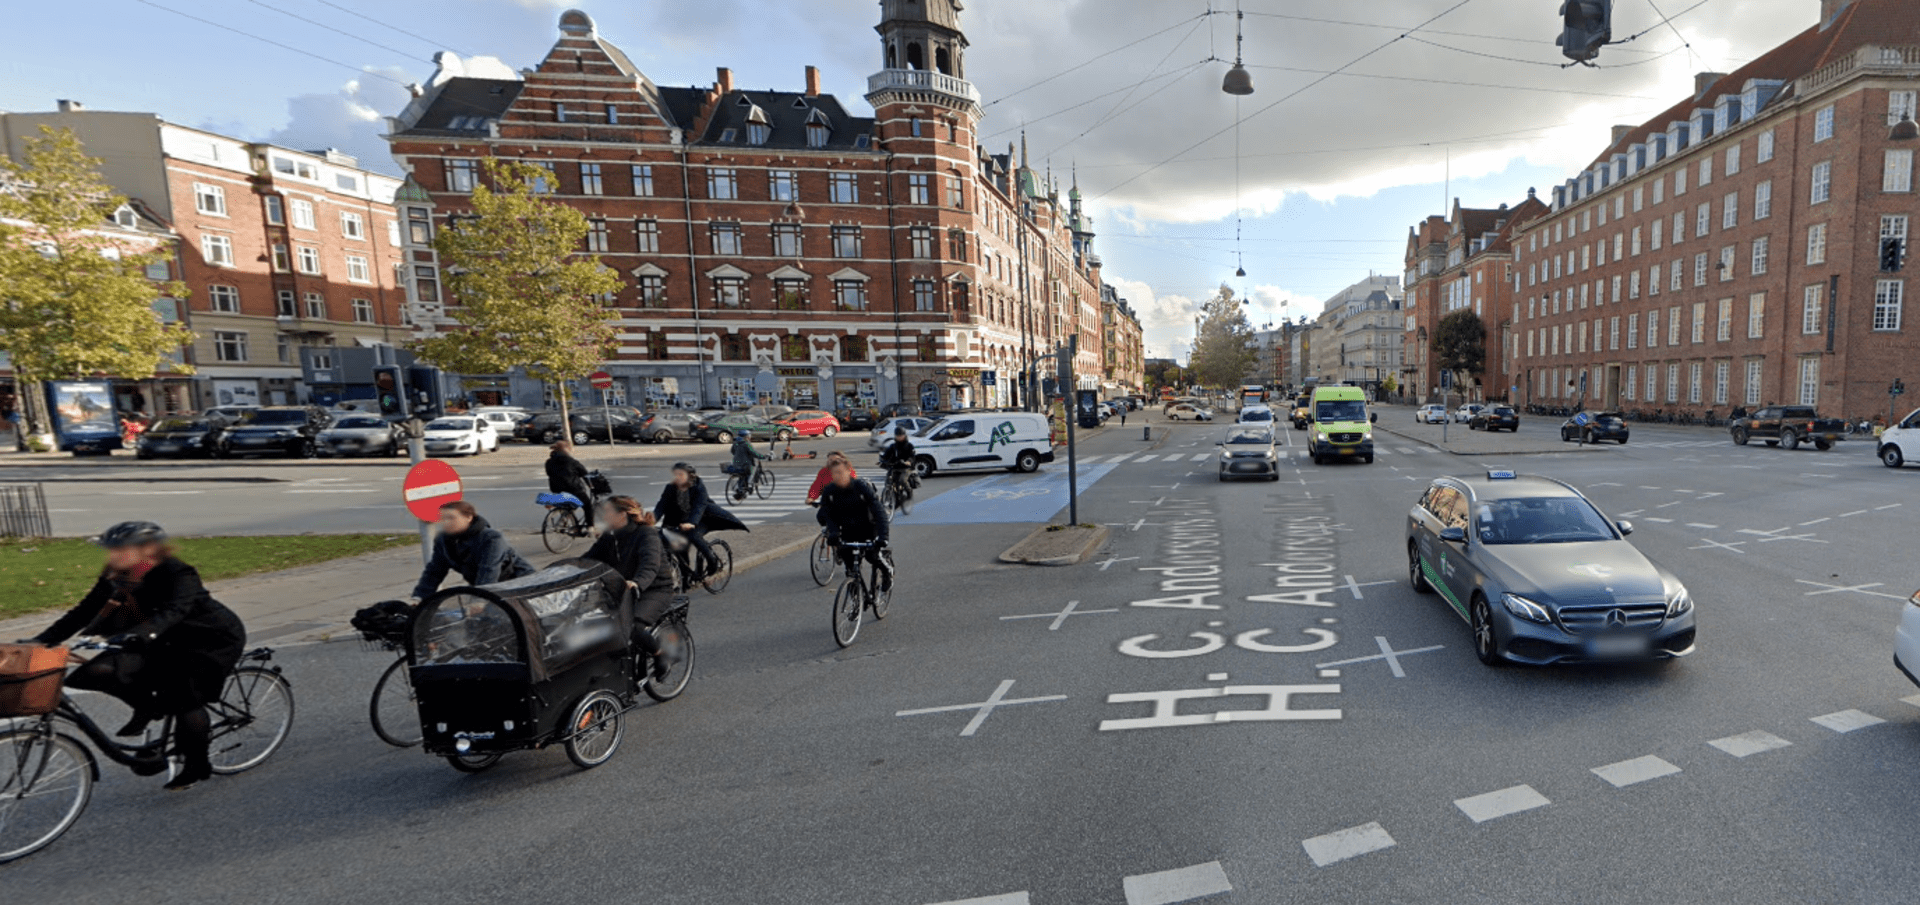 V Kodani si cyklisté a řidiči nepřekážejí - Google views